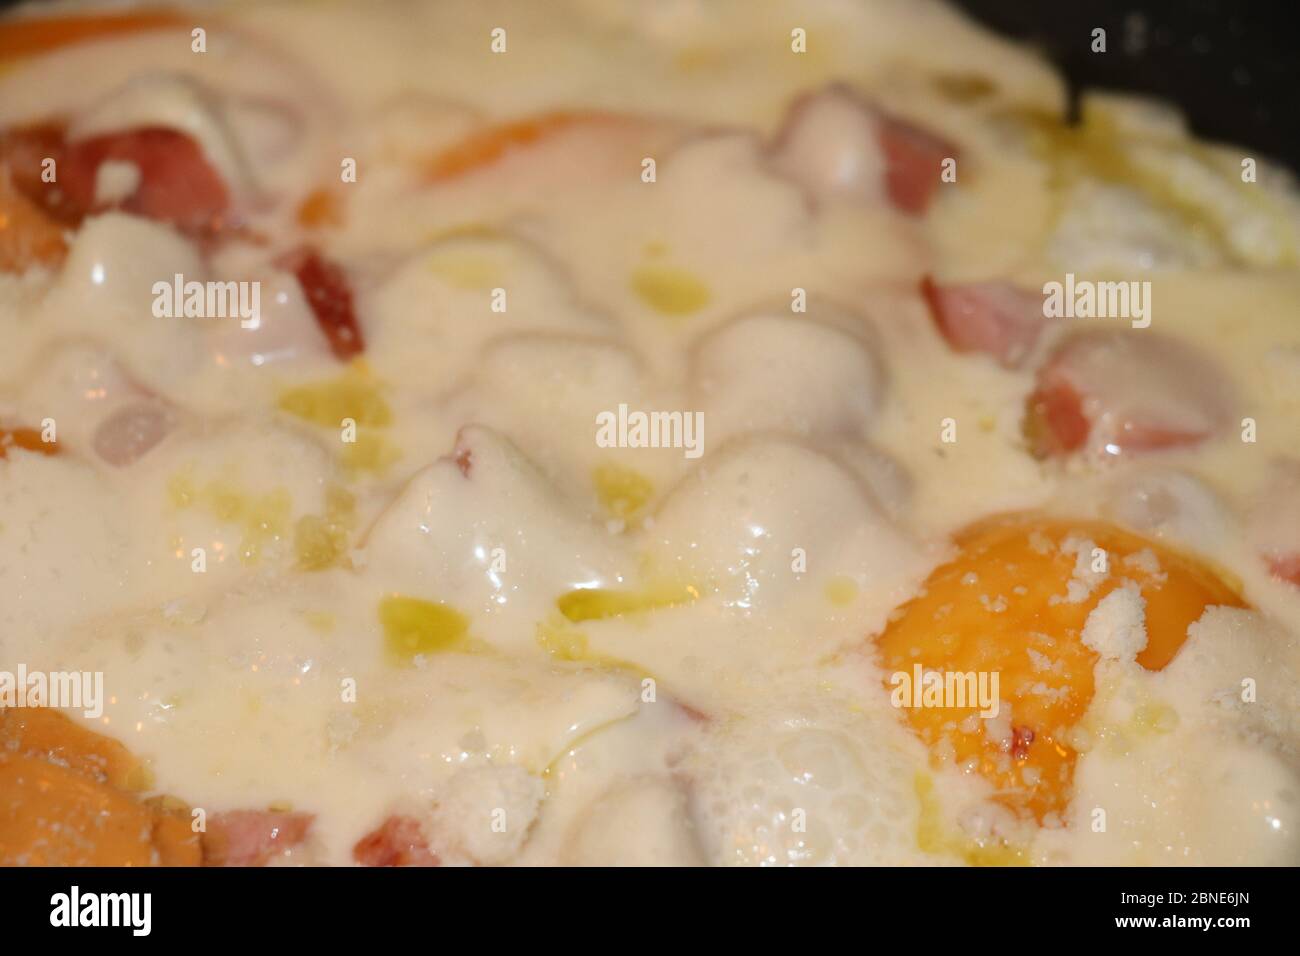 Eier mit Wurst und Käse auf einer Pfanne kochen Stockfoto